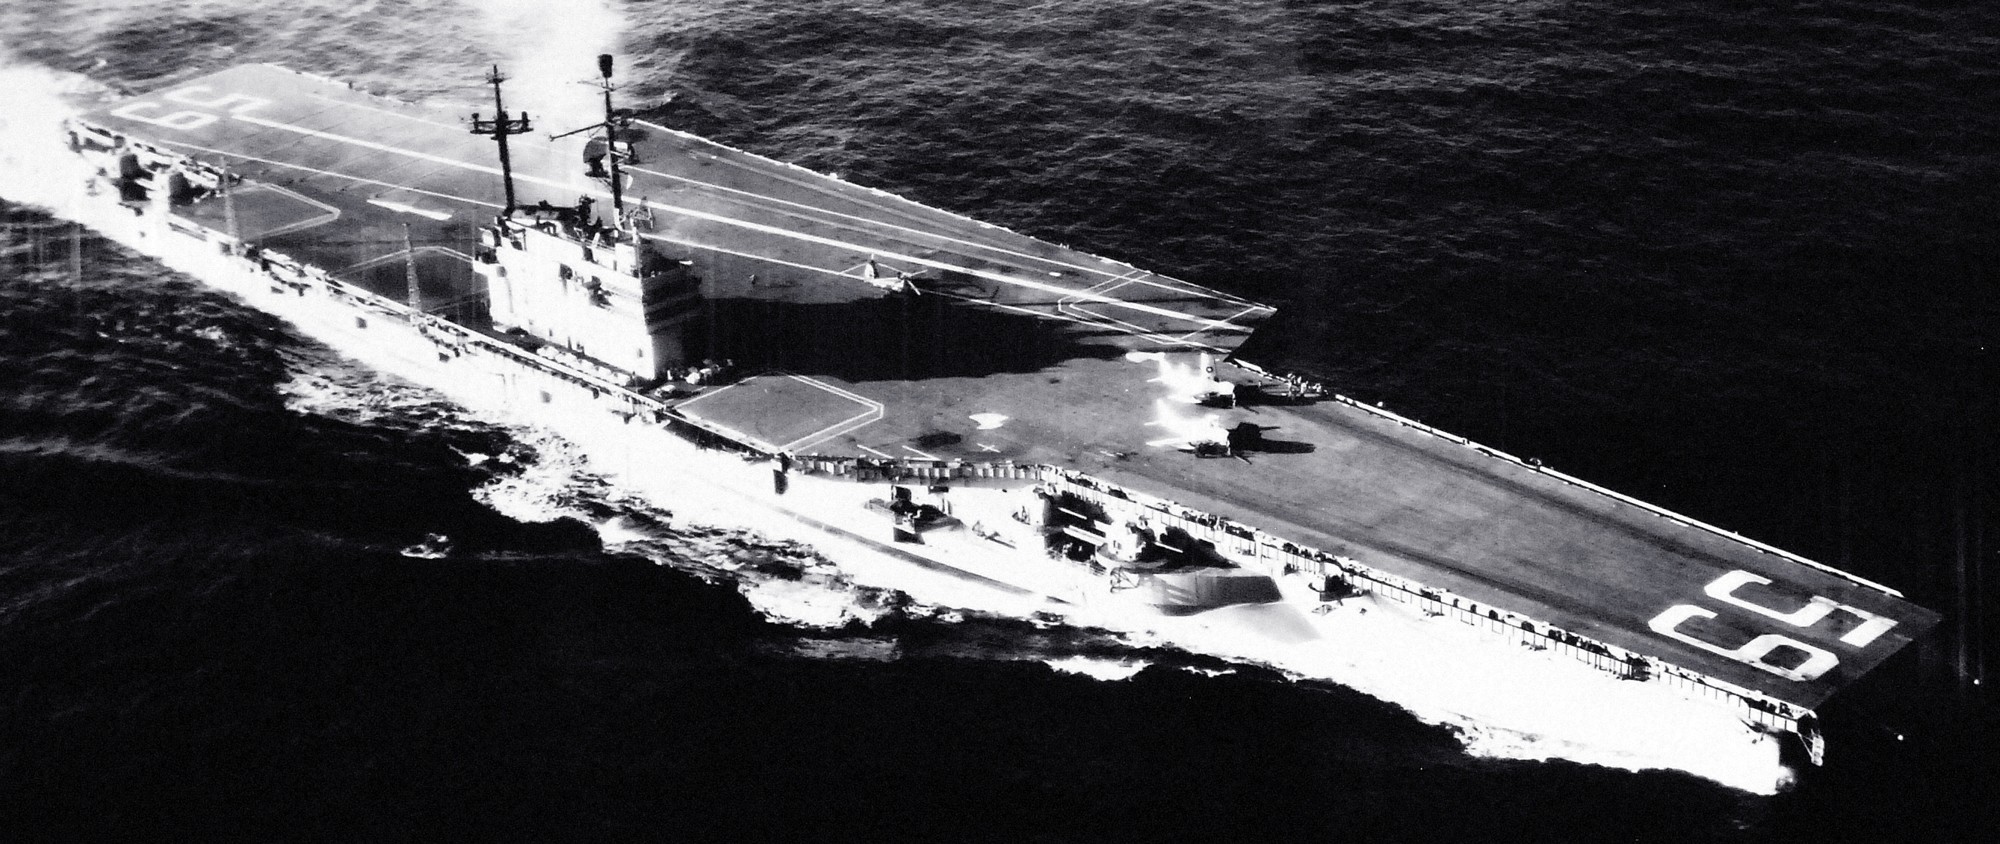 cv-59 uss forrestal aircraft carrier us navy 28